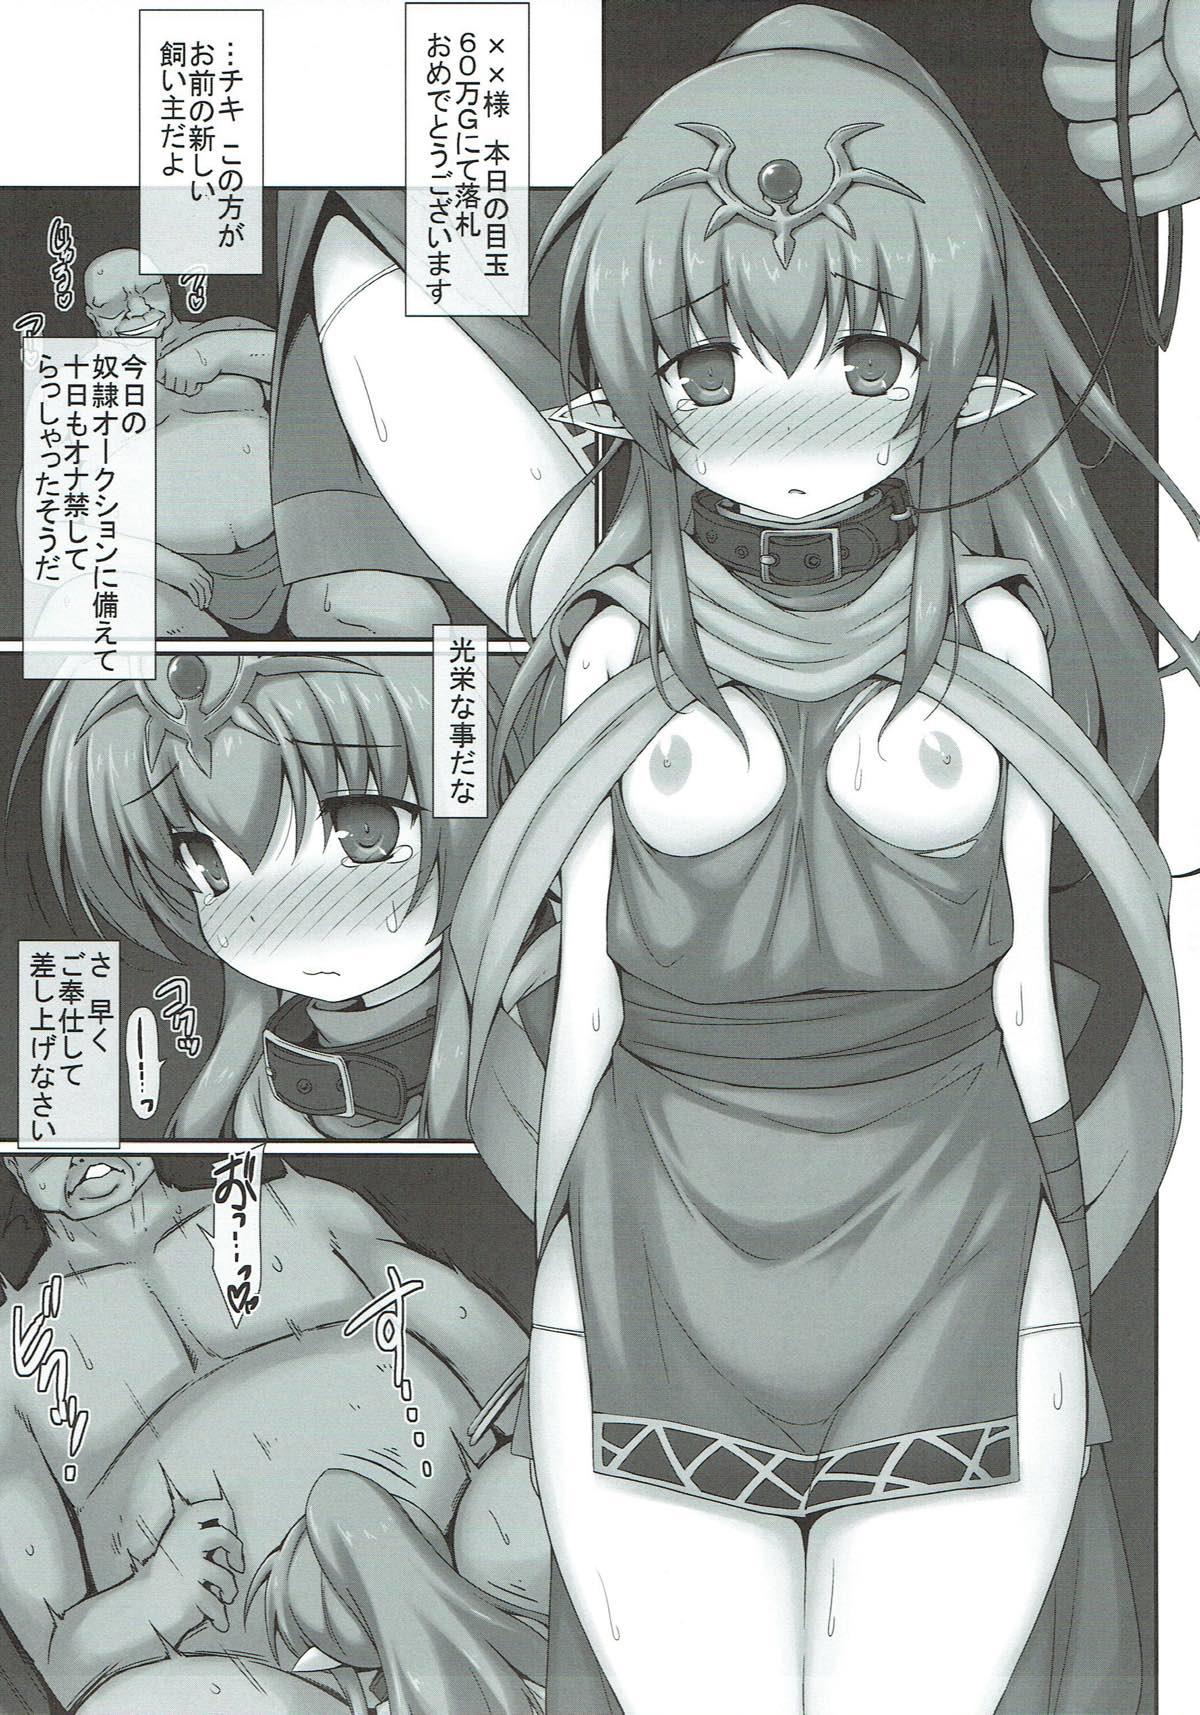 Belly Koi Omae no Kainushi ga Kimatta zo - Fire emblem awakening Flagra - Page 2